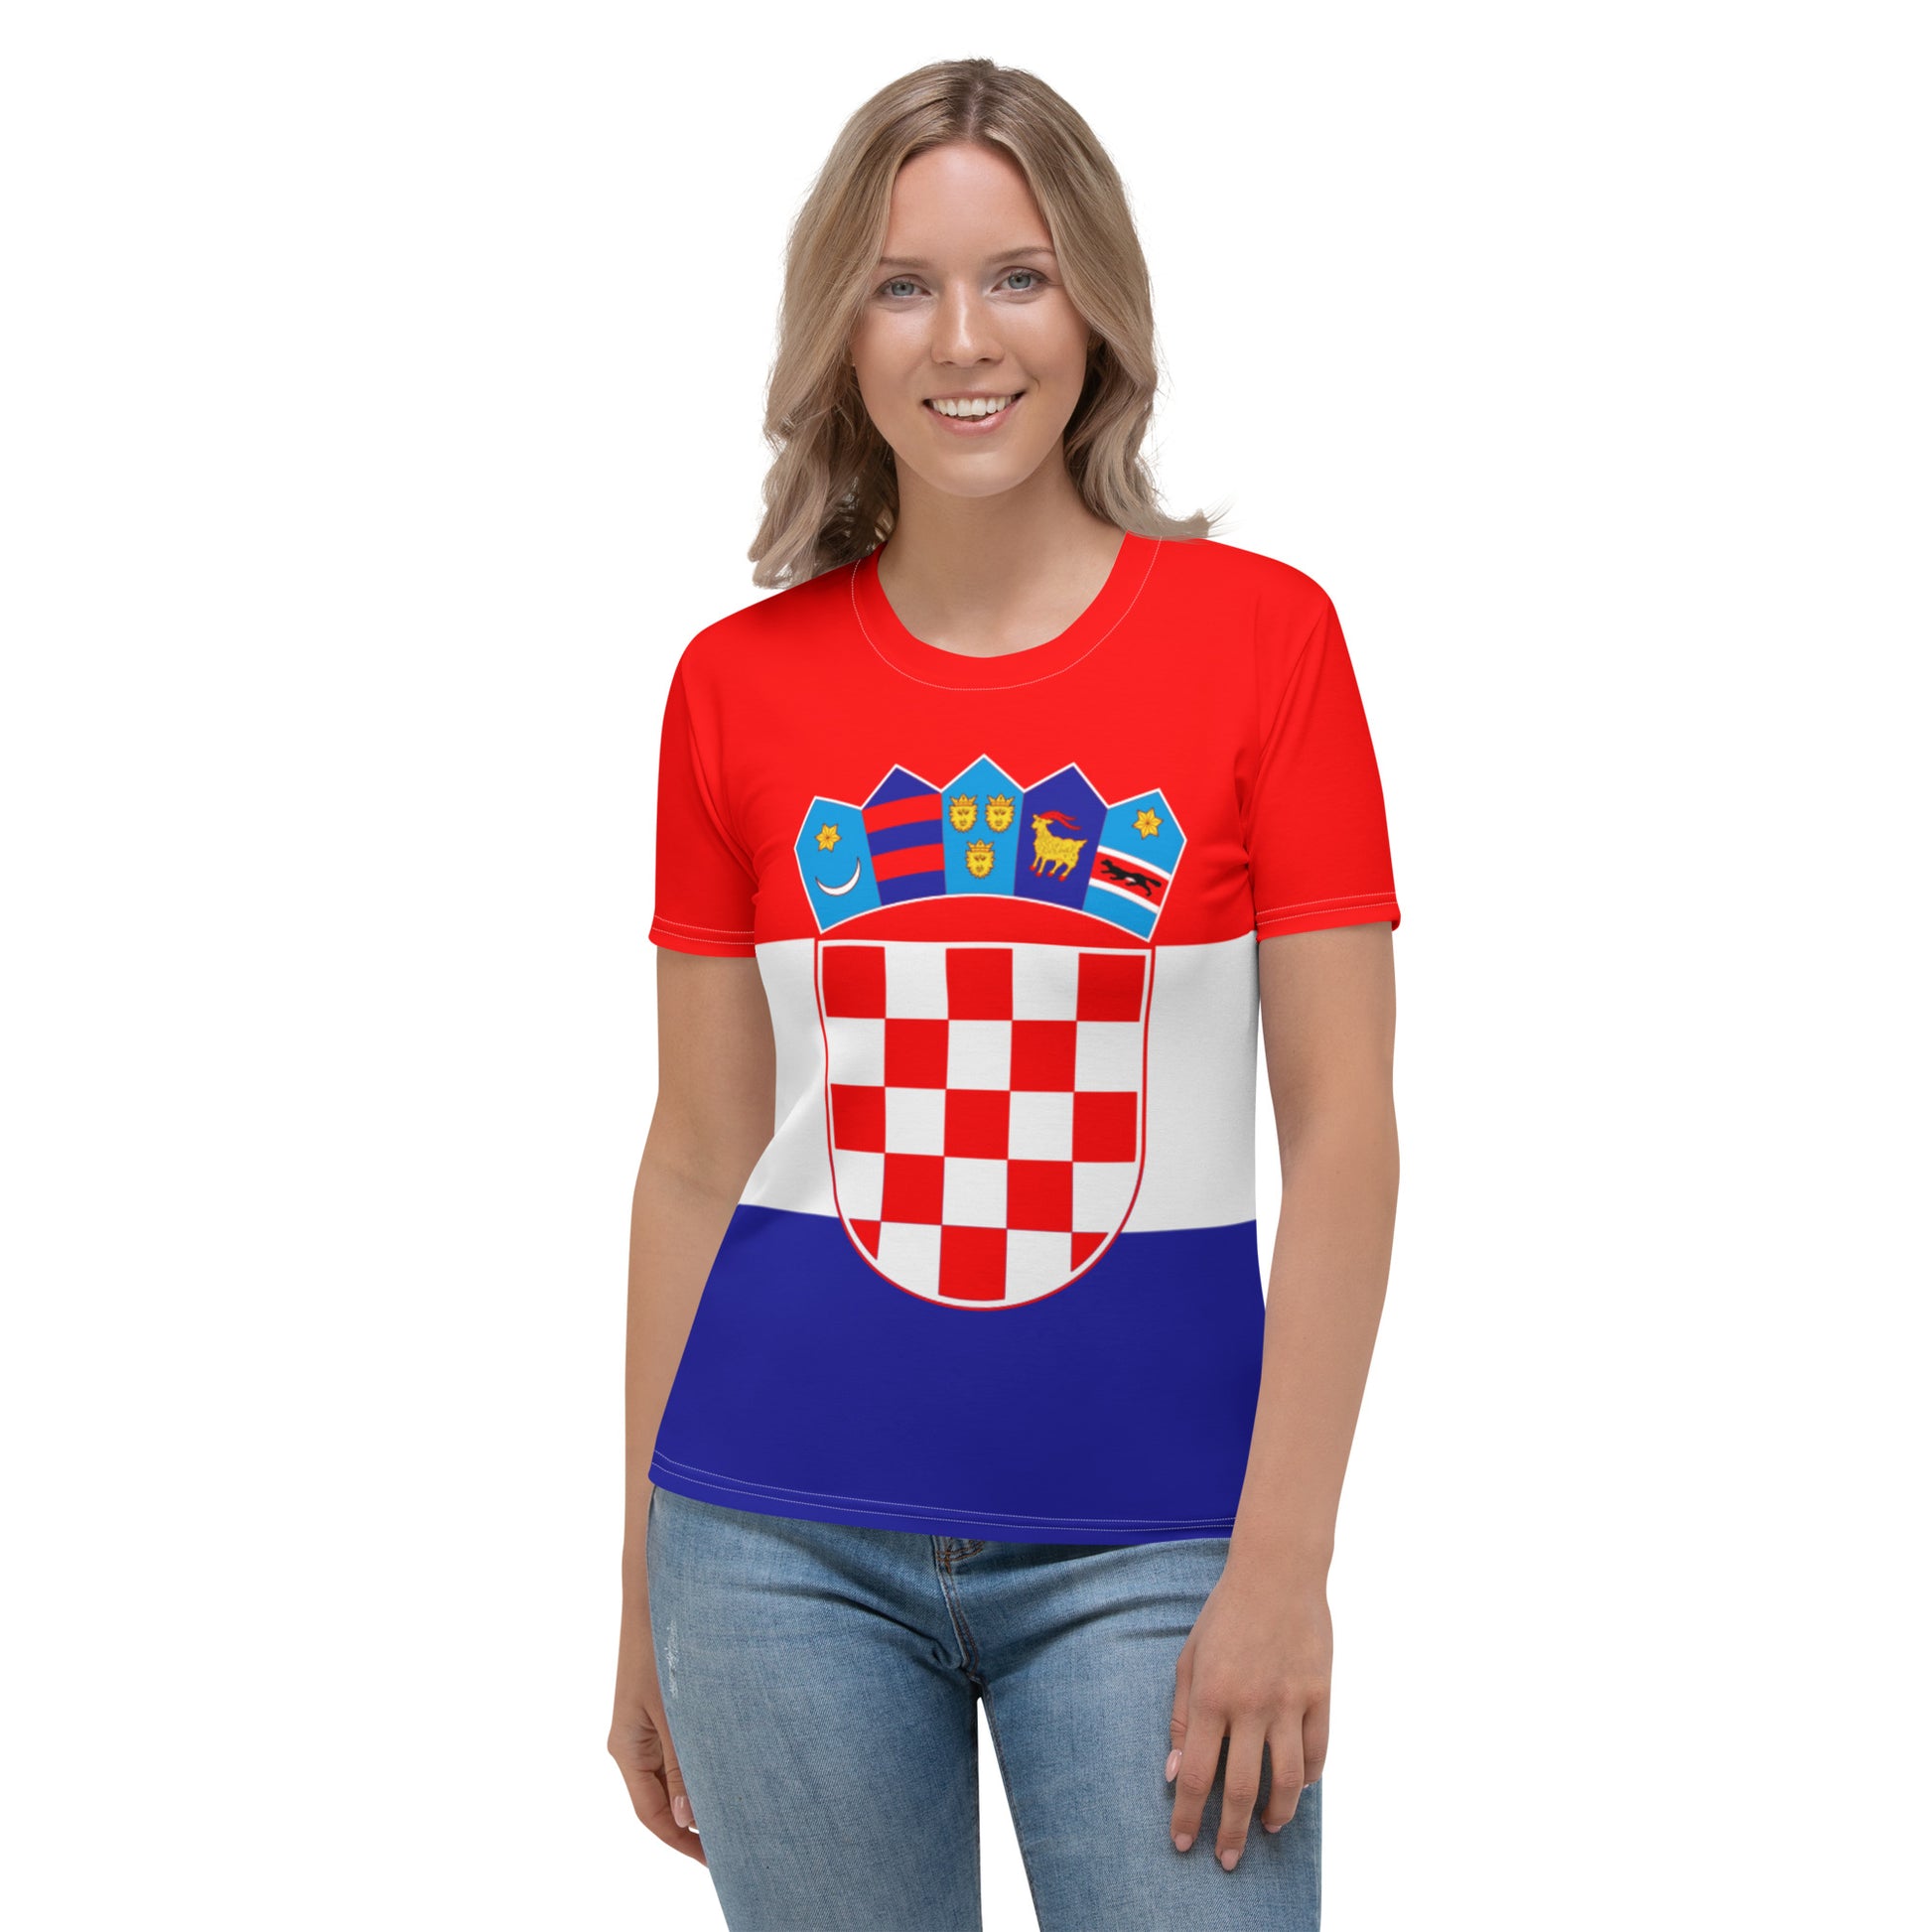 Croatian Flag Shirt / Croatia Style Clothing For WomenCroatian Flag Shirt / Croatia Style Clothing For Women